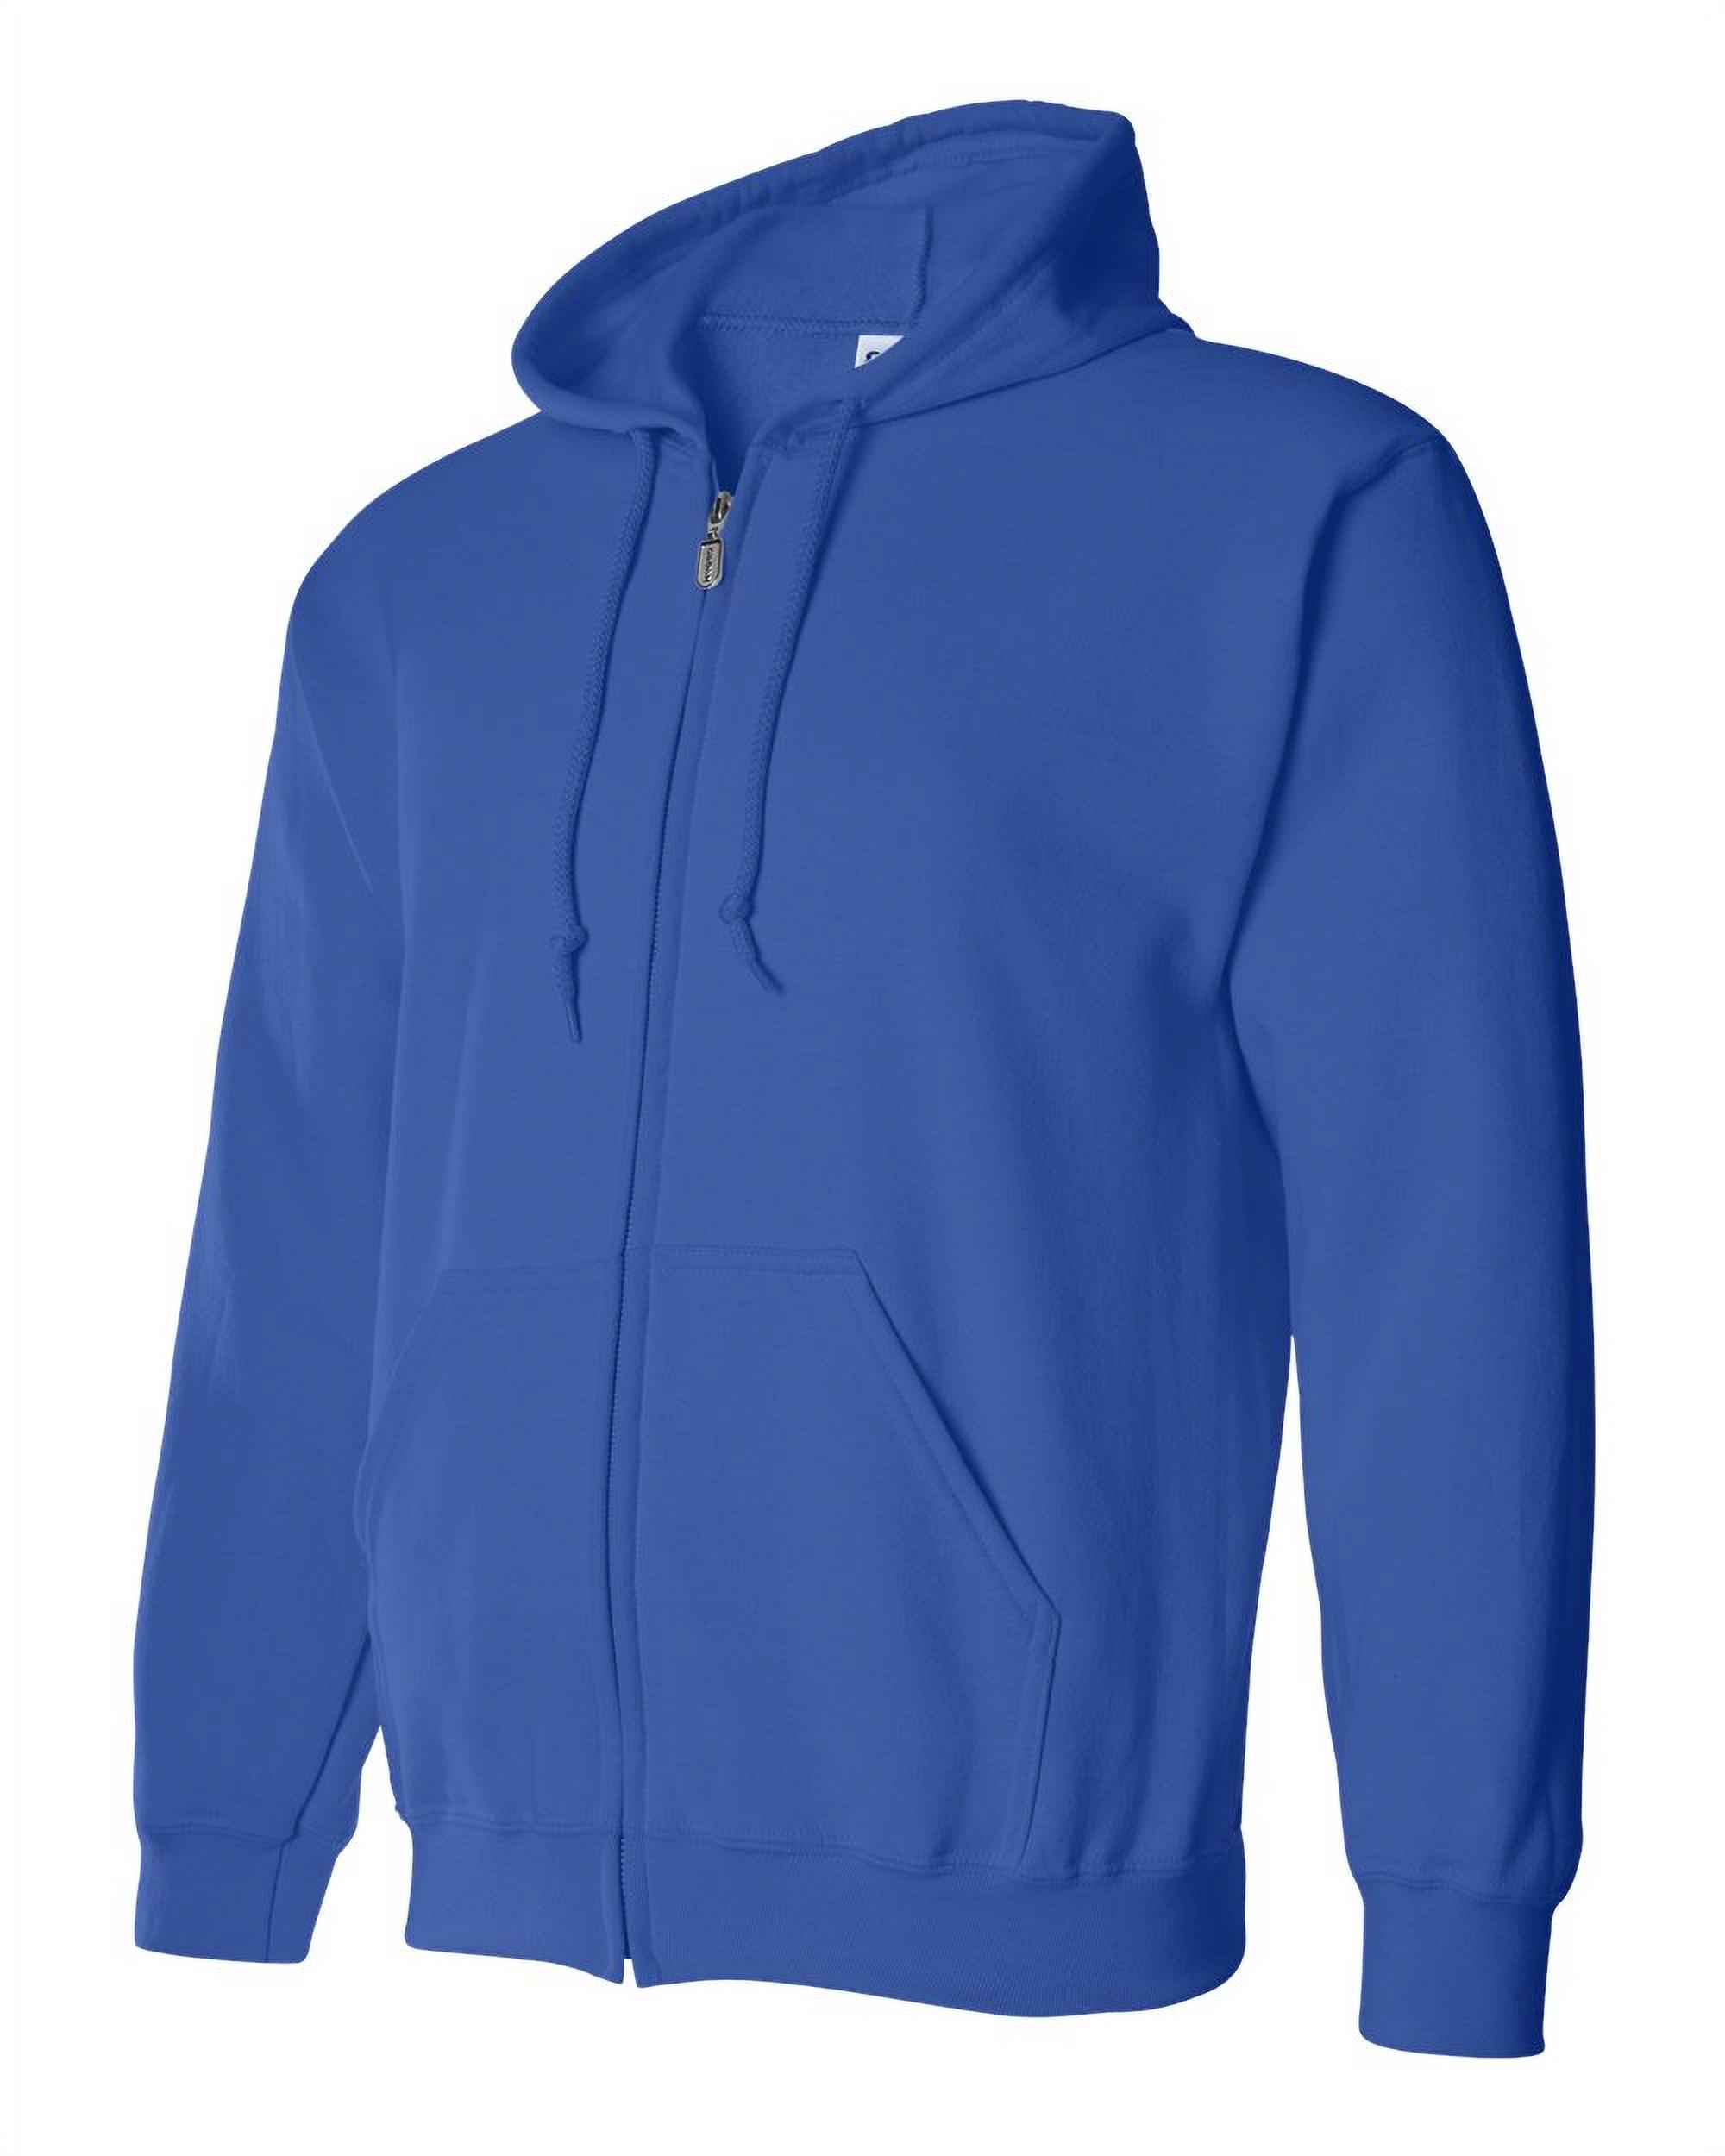 Artix - Men's Sweatshirt Full-Zip Pullover - St. Louis - image 3 of 5